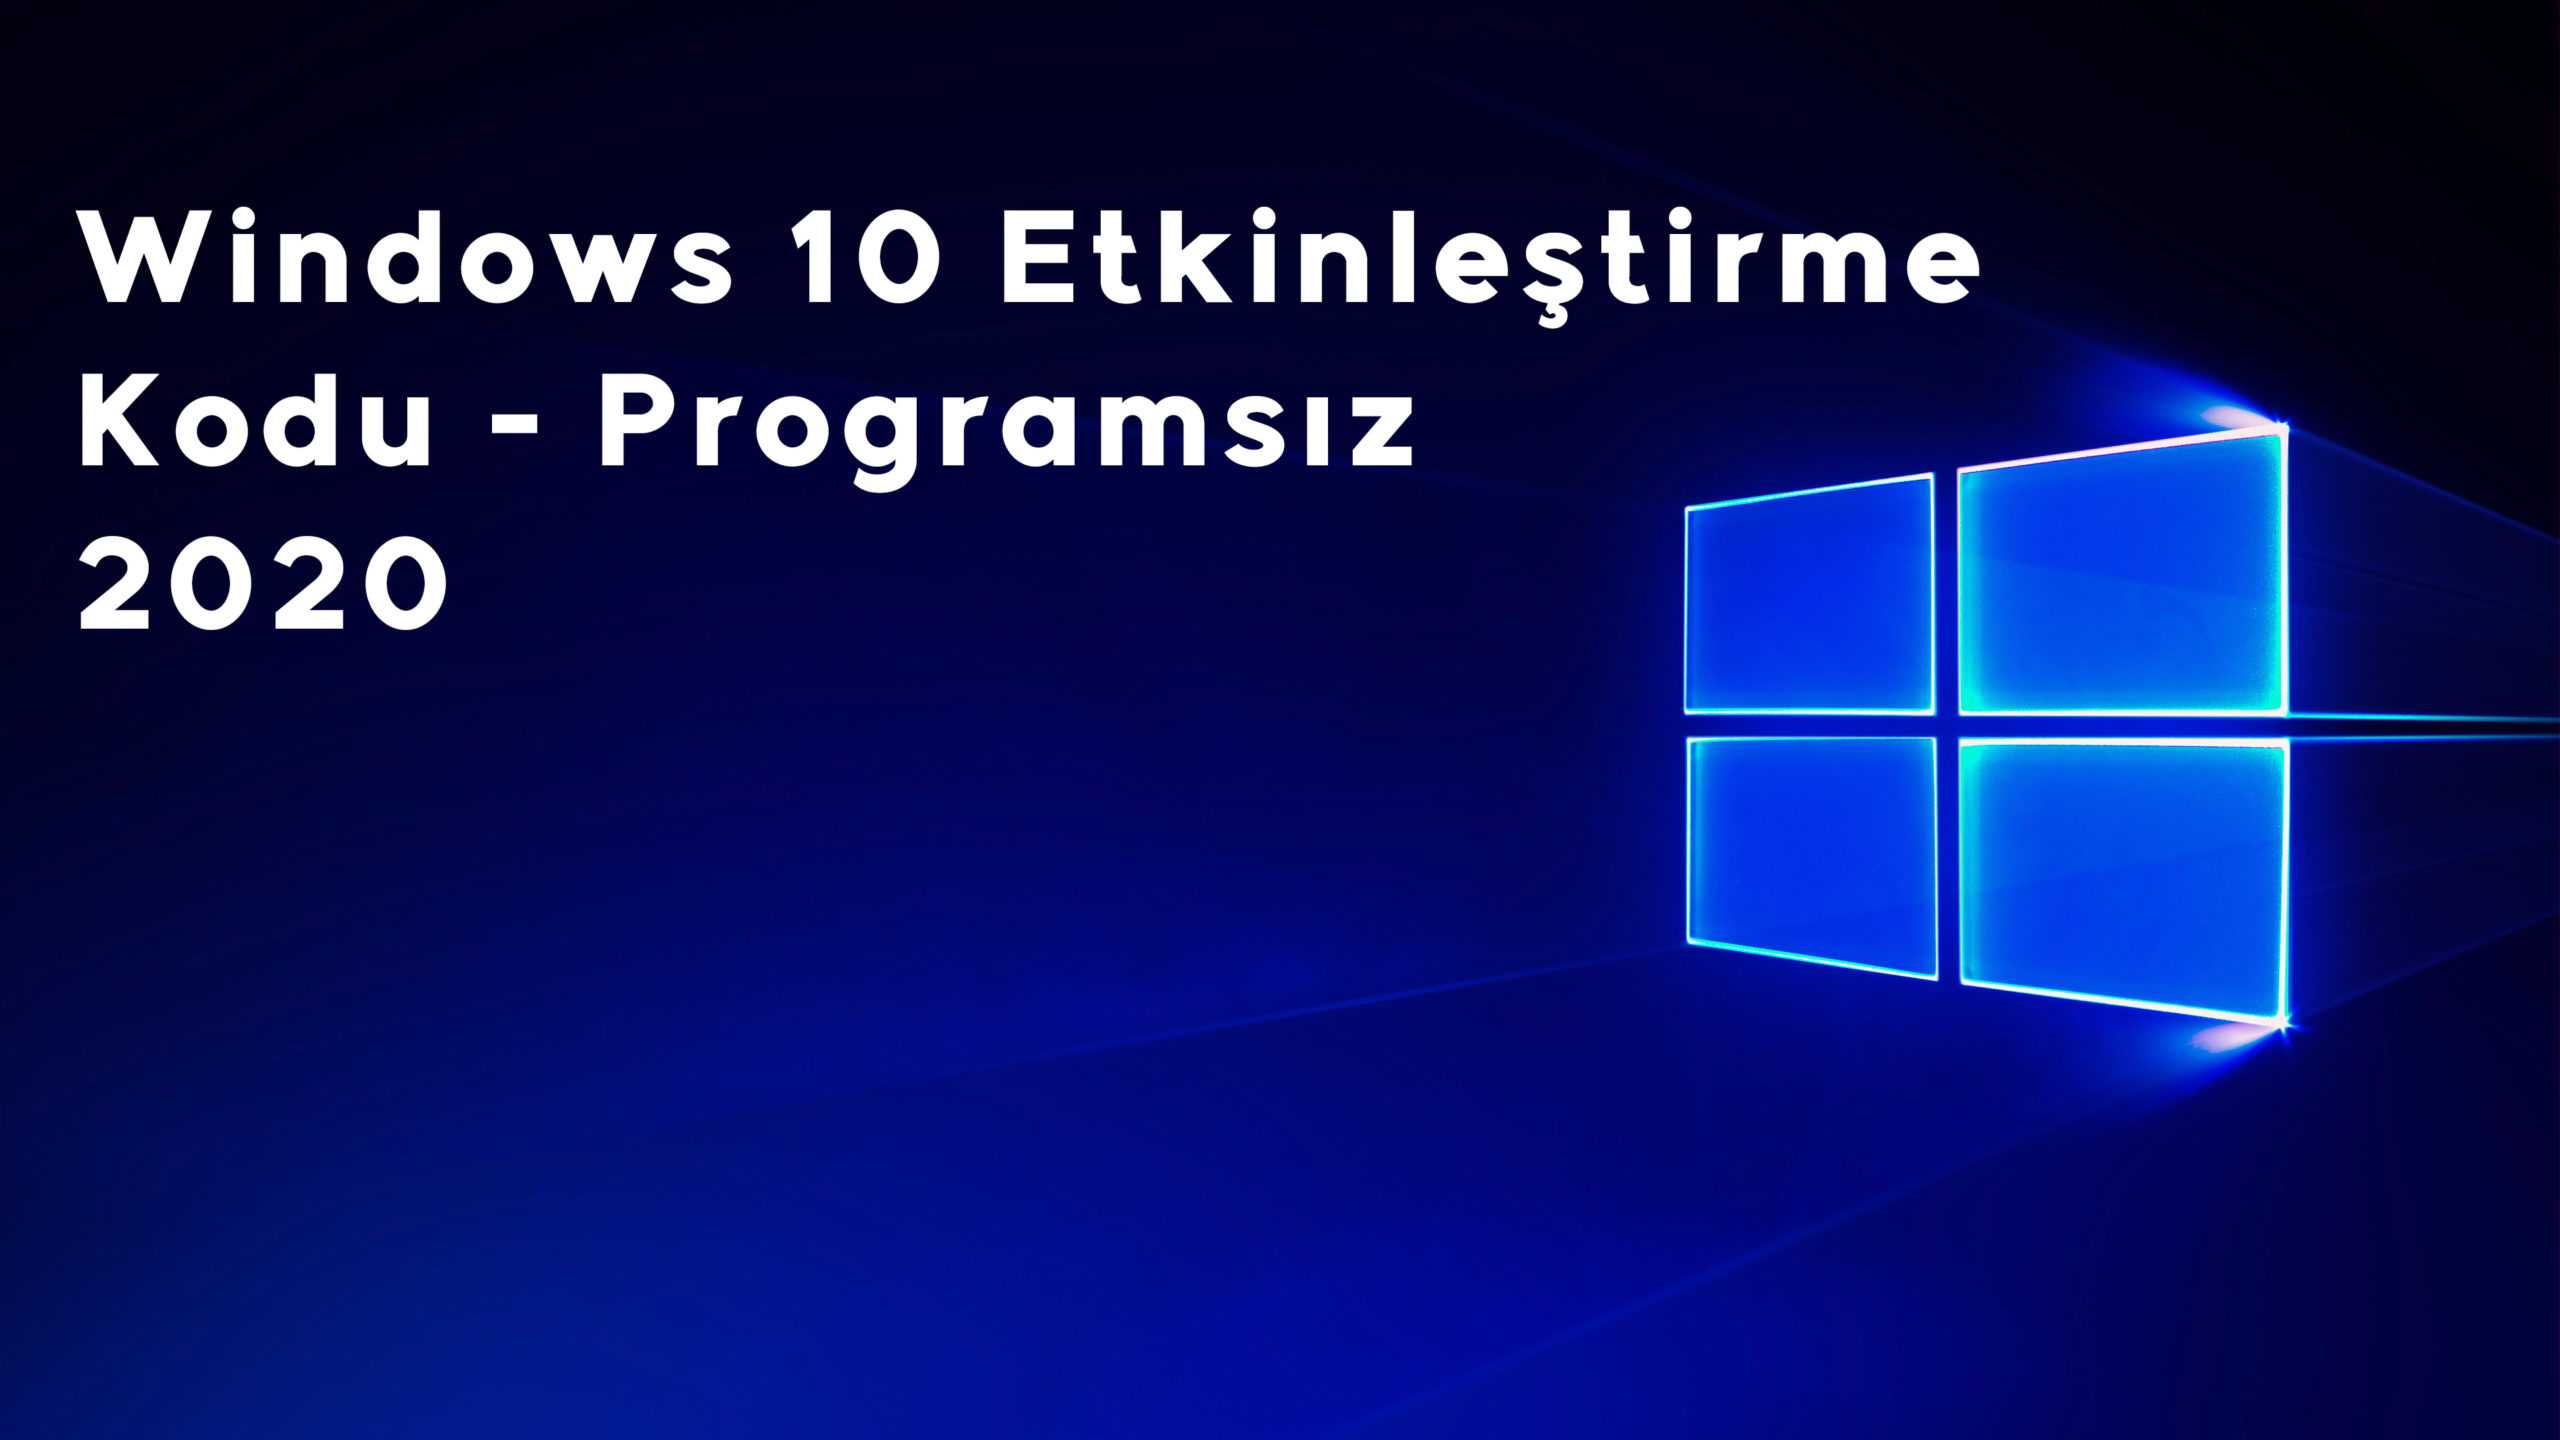 Windows 10 Etkinleştirme Kodu Programsız (2020)